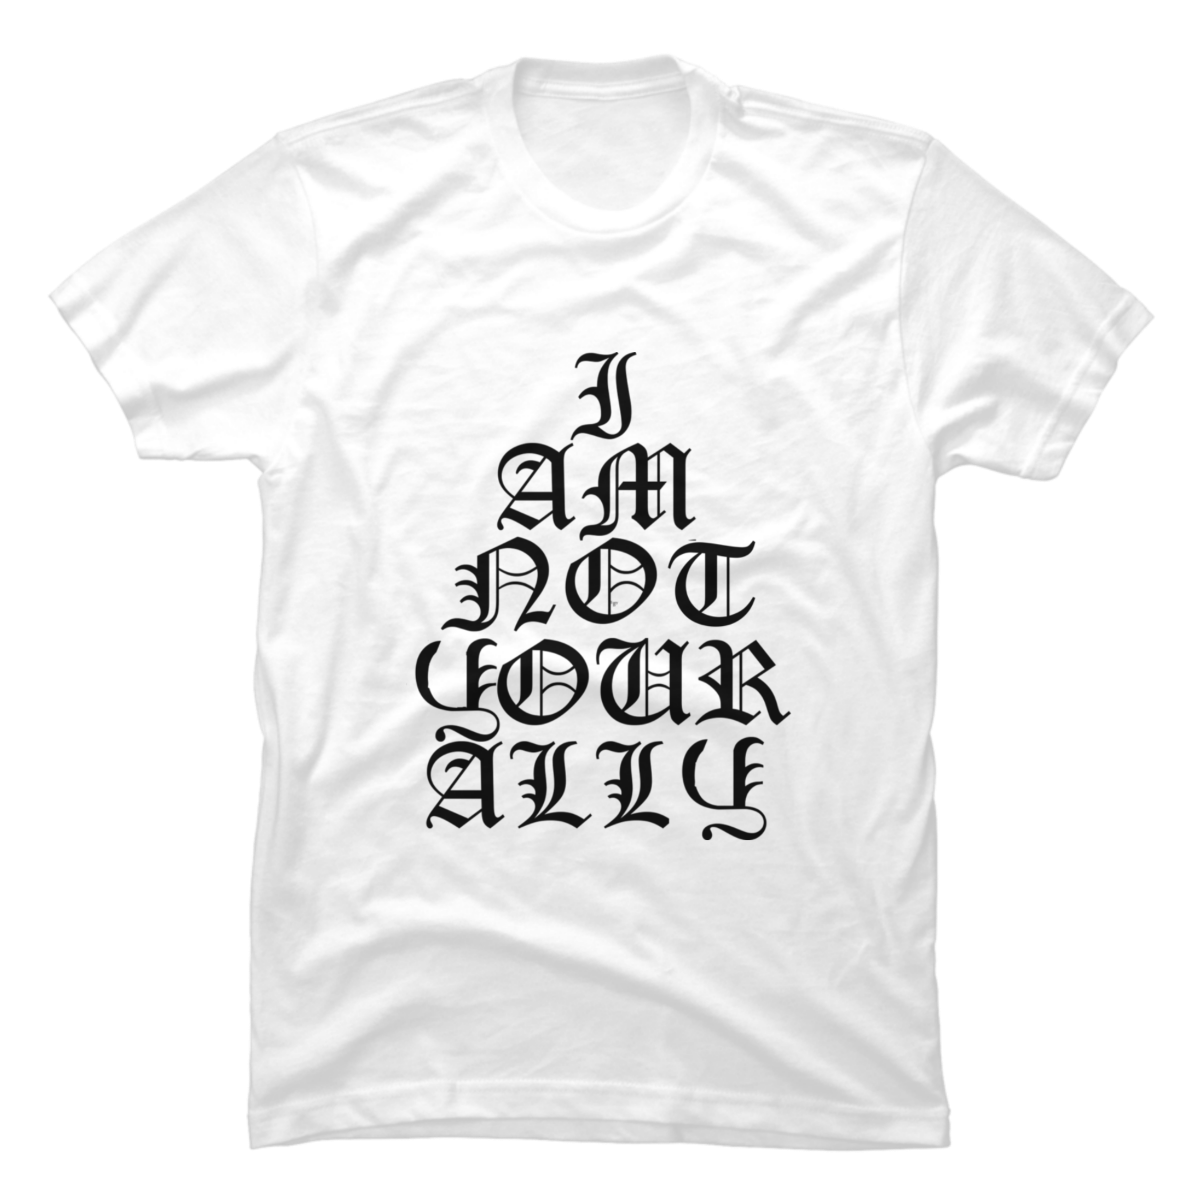 i am an ally shirt